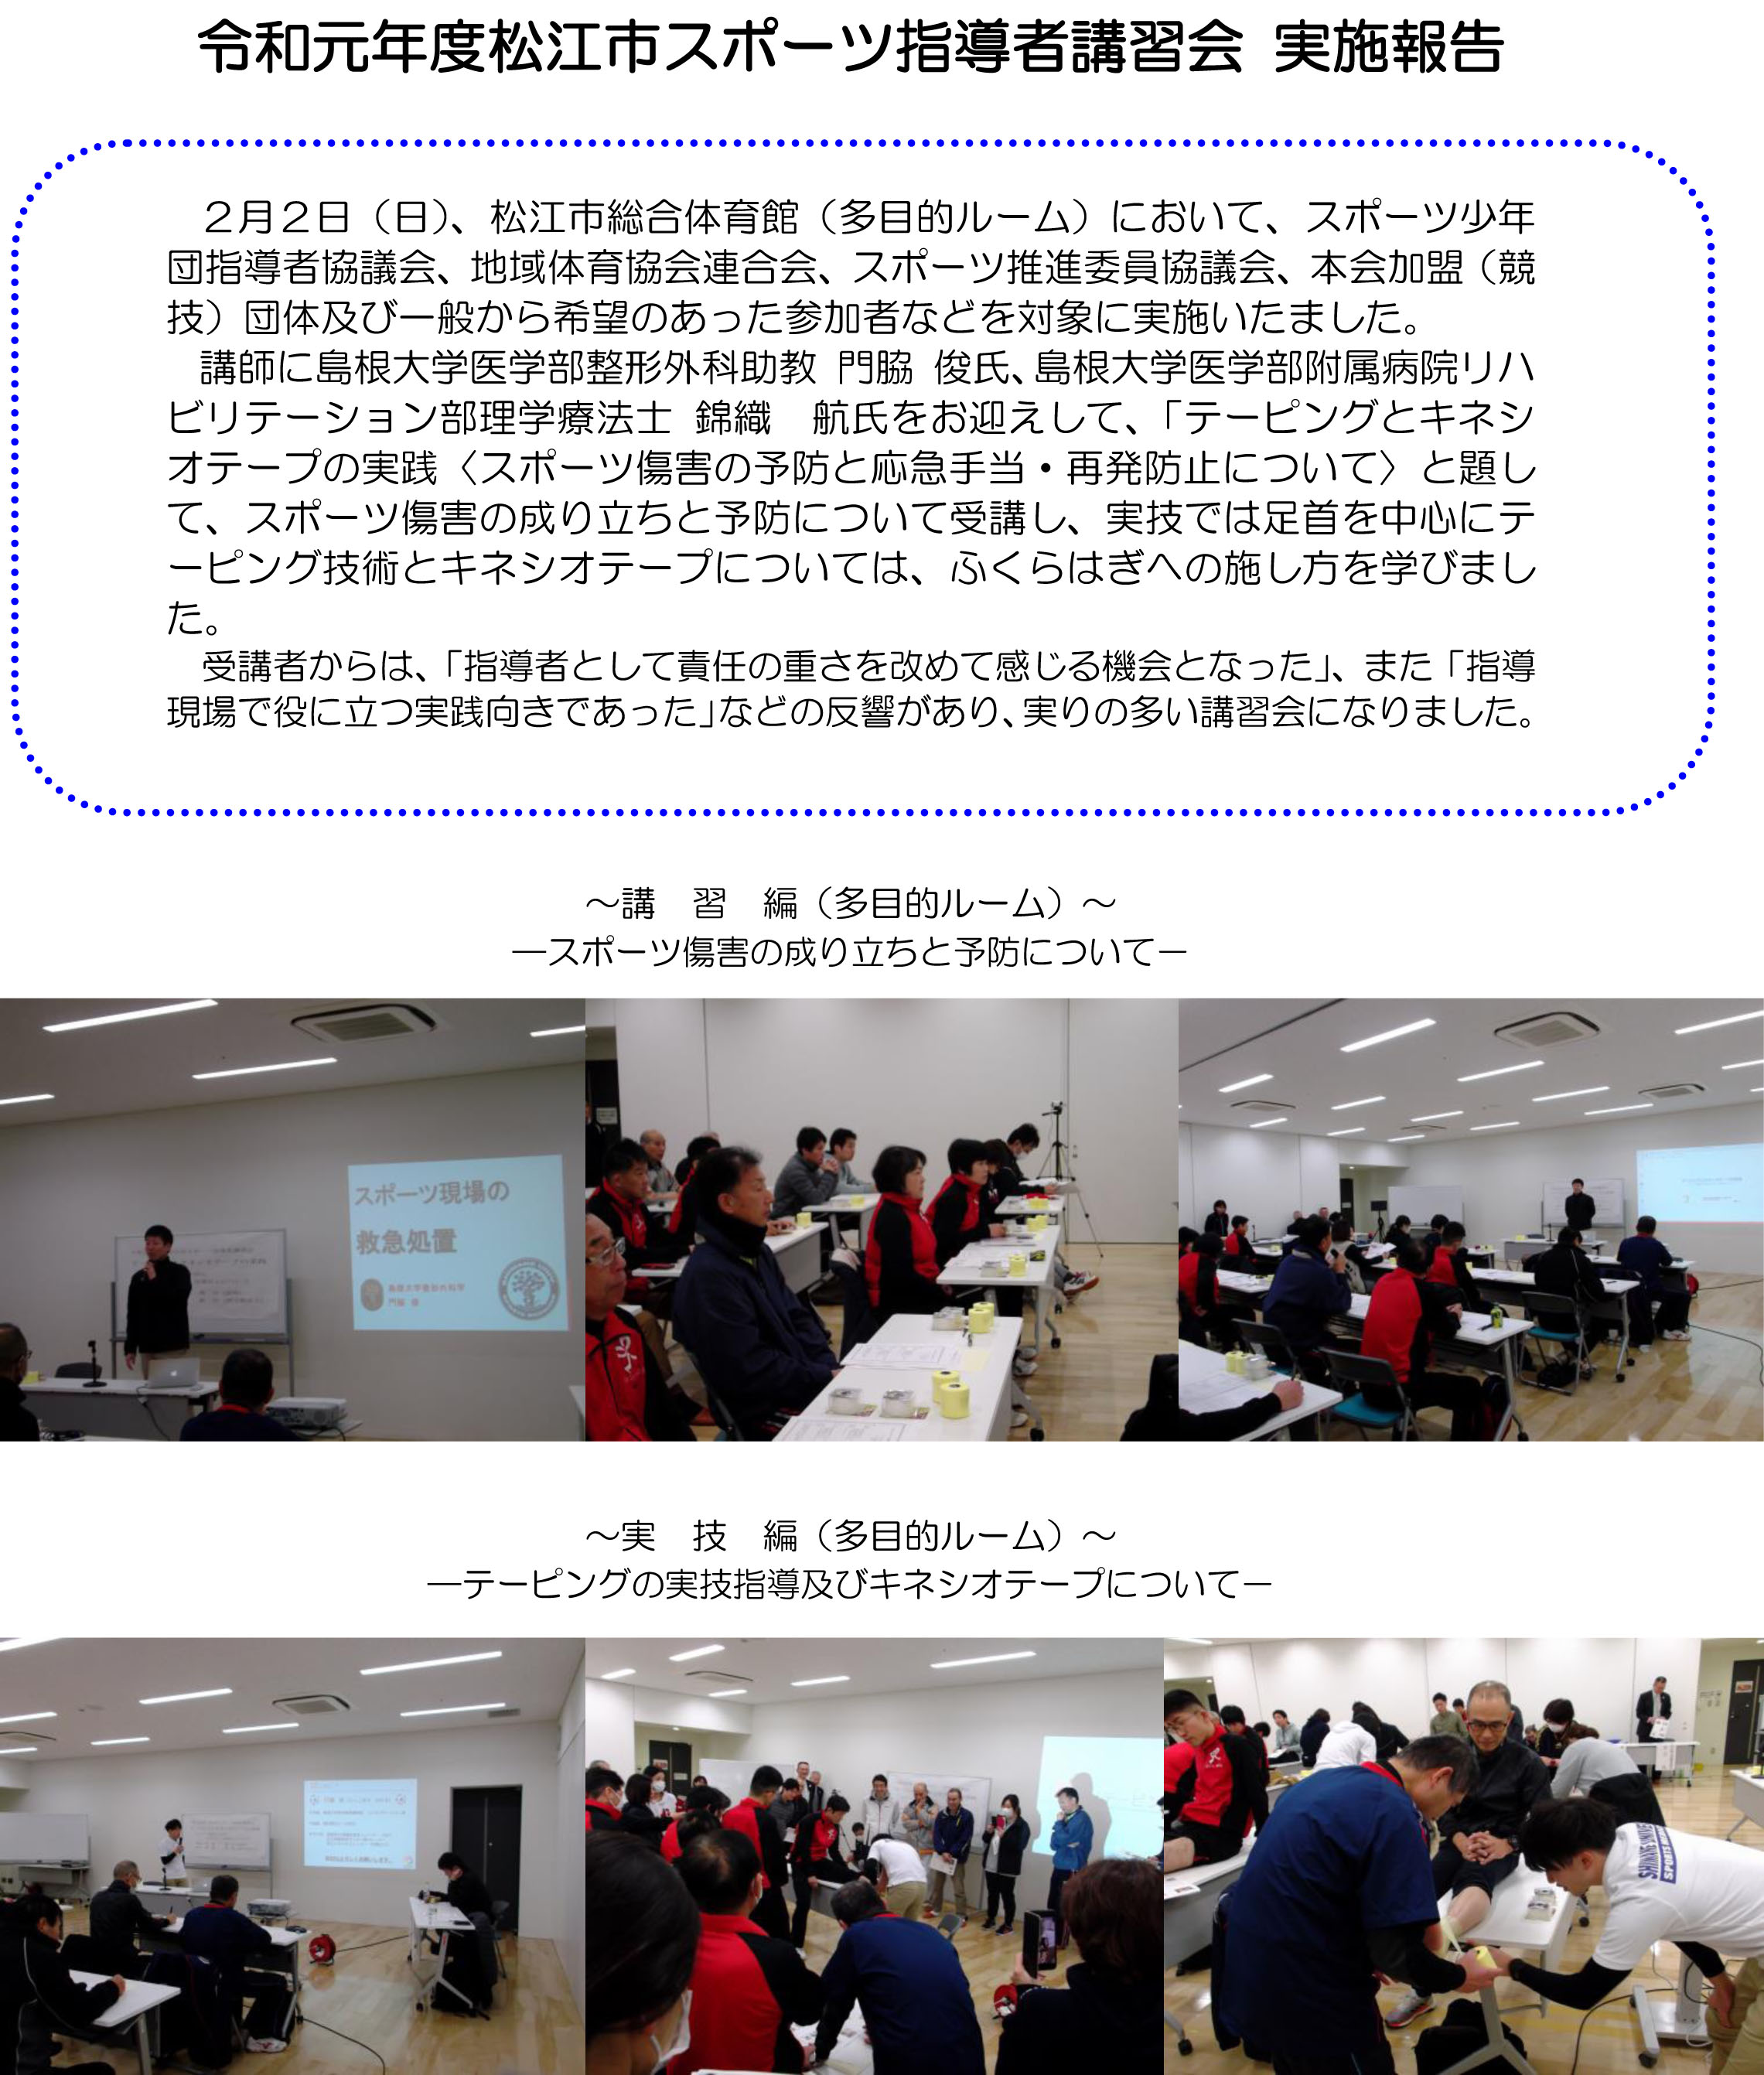 令和元年度松江市スポーツ指導者講習会 実施報告